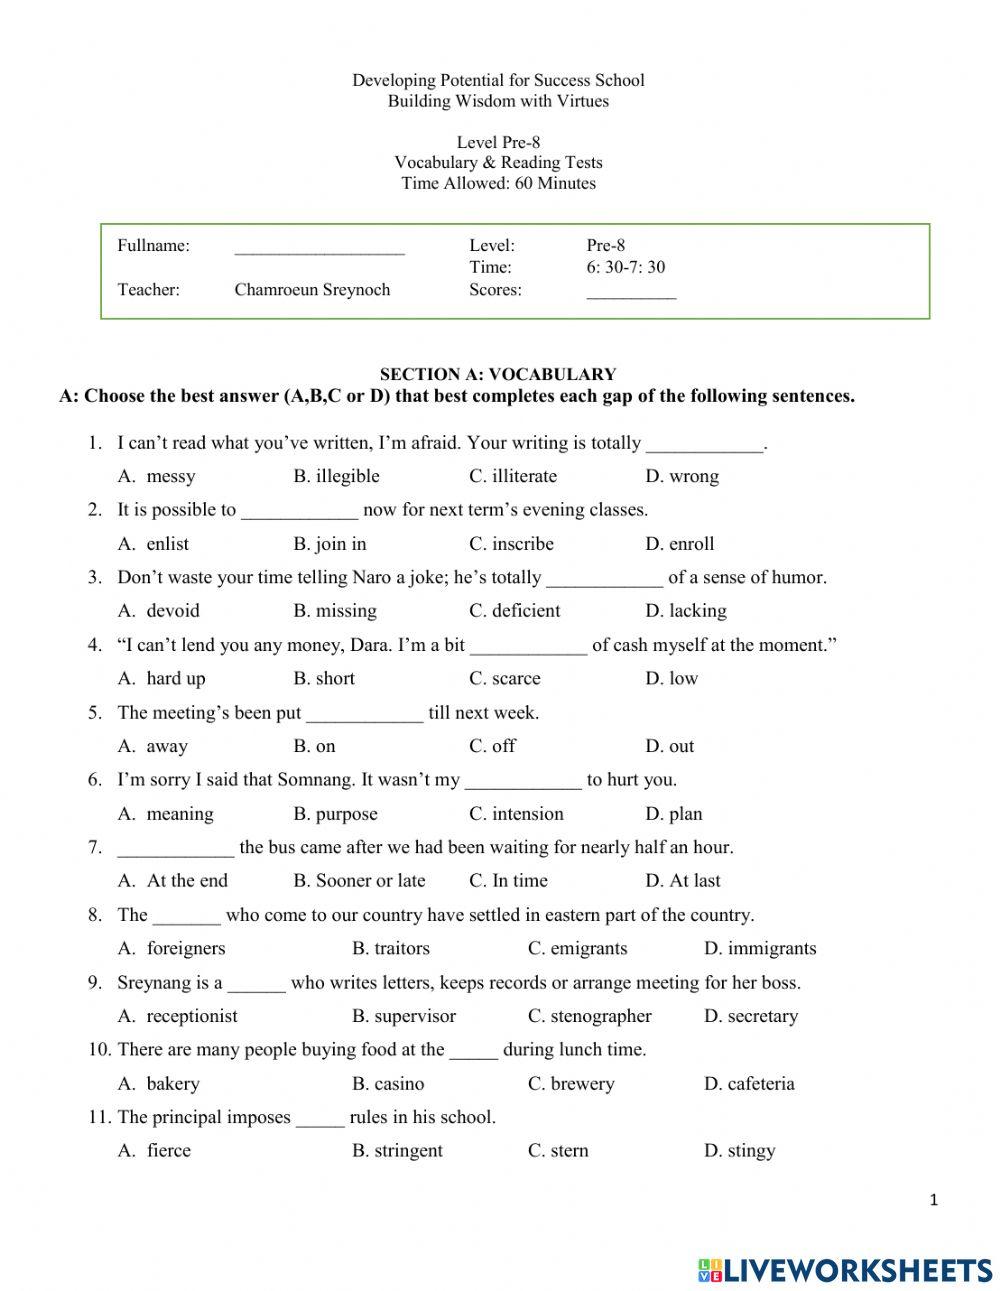 Level Pre-8 Vocabulary Test